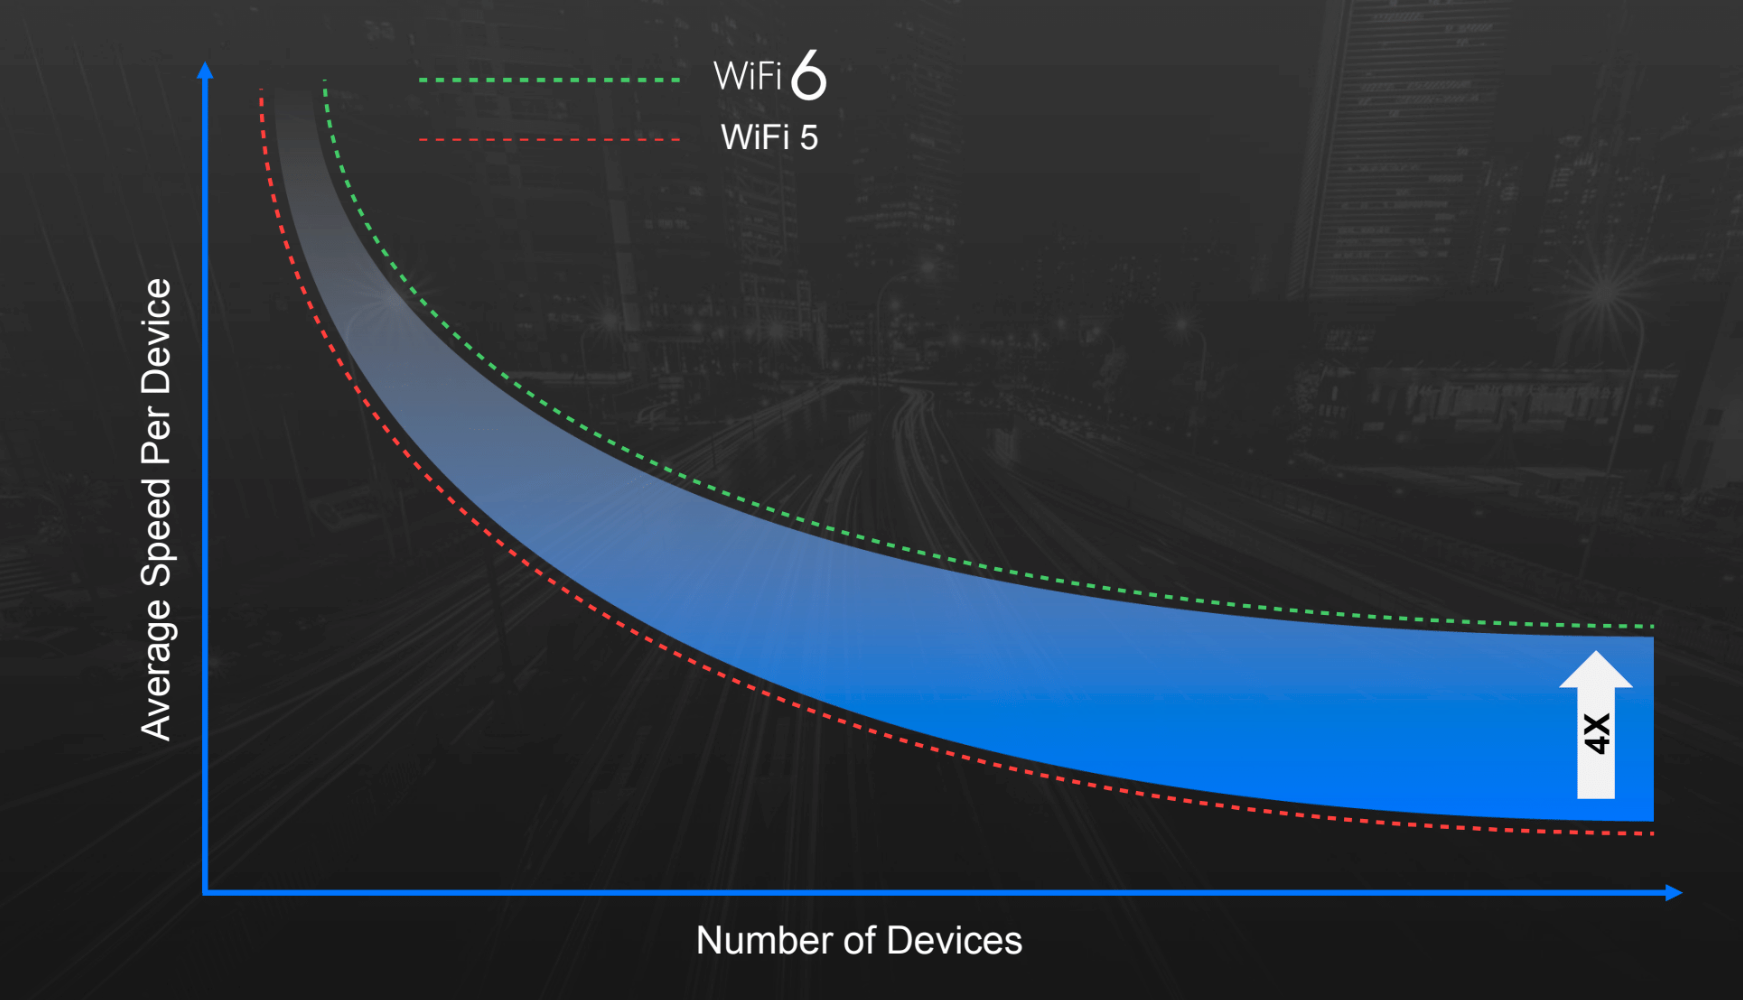 Selve maksfarten i det trådløse nettverket vil ikke øke voldsomt med Wi-Fi 6, men hver enhet vil få mer båndbredde å rutte med når det er mange enheter tilkoblet.